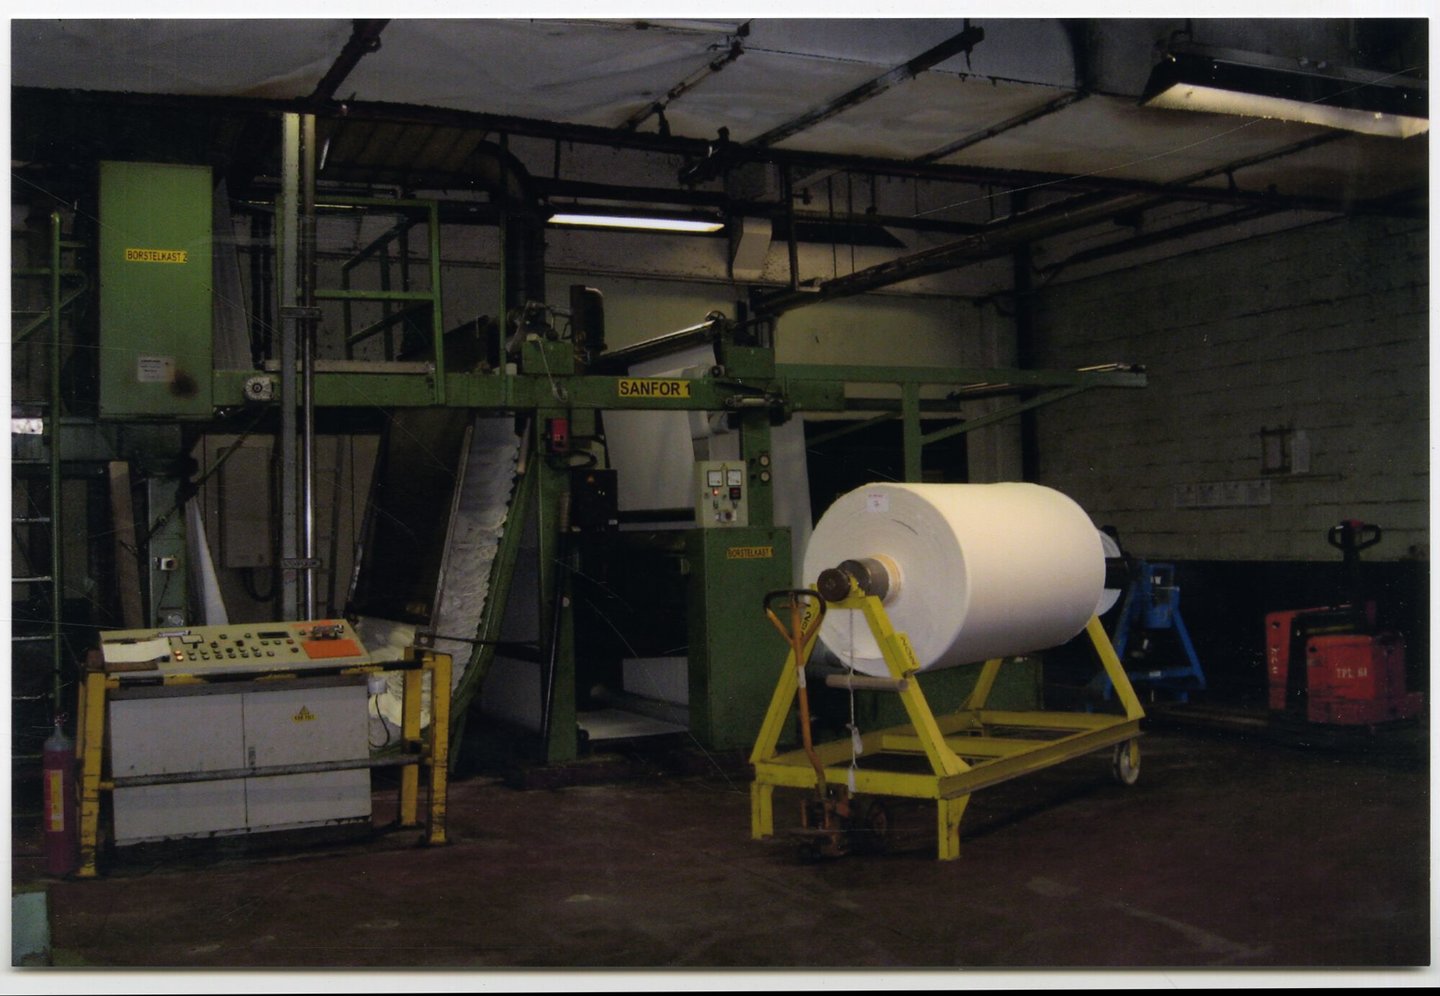 Sanformachine in textielfabriek UCO Braun in Gent